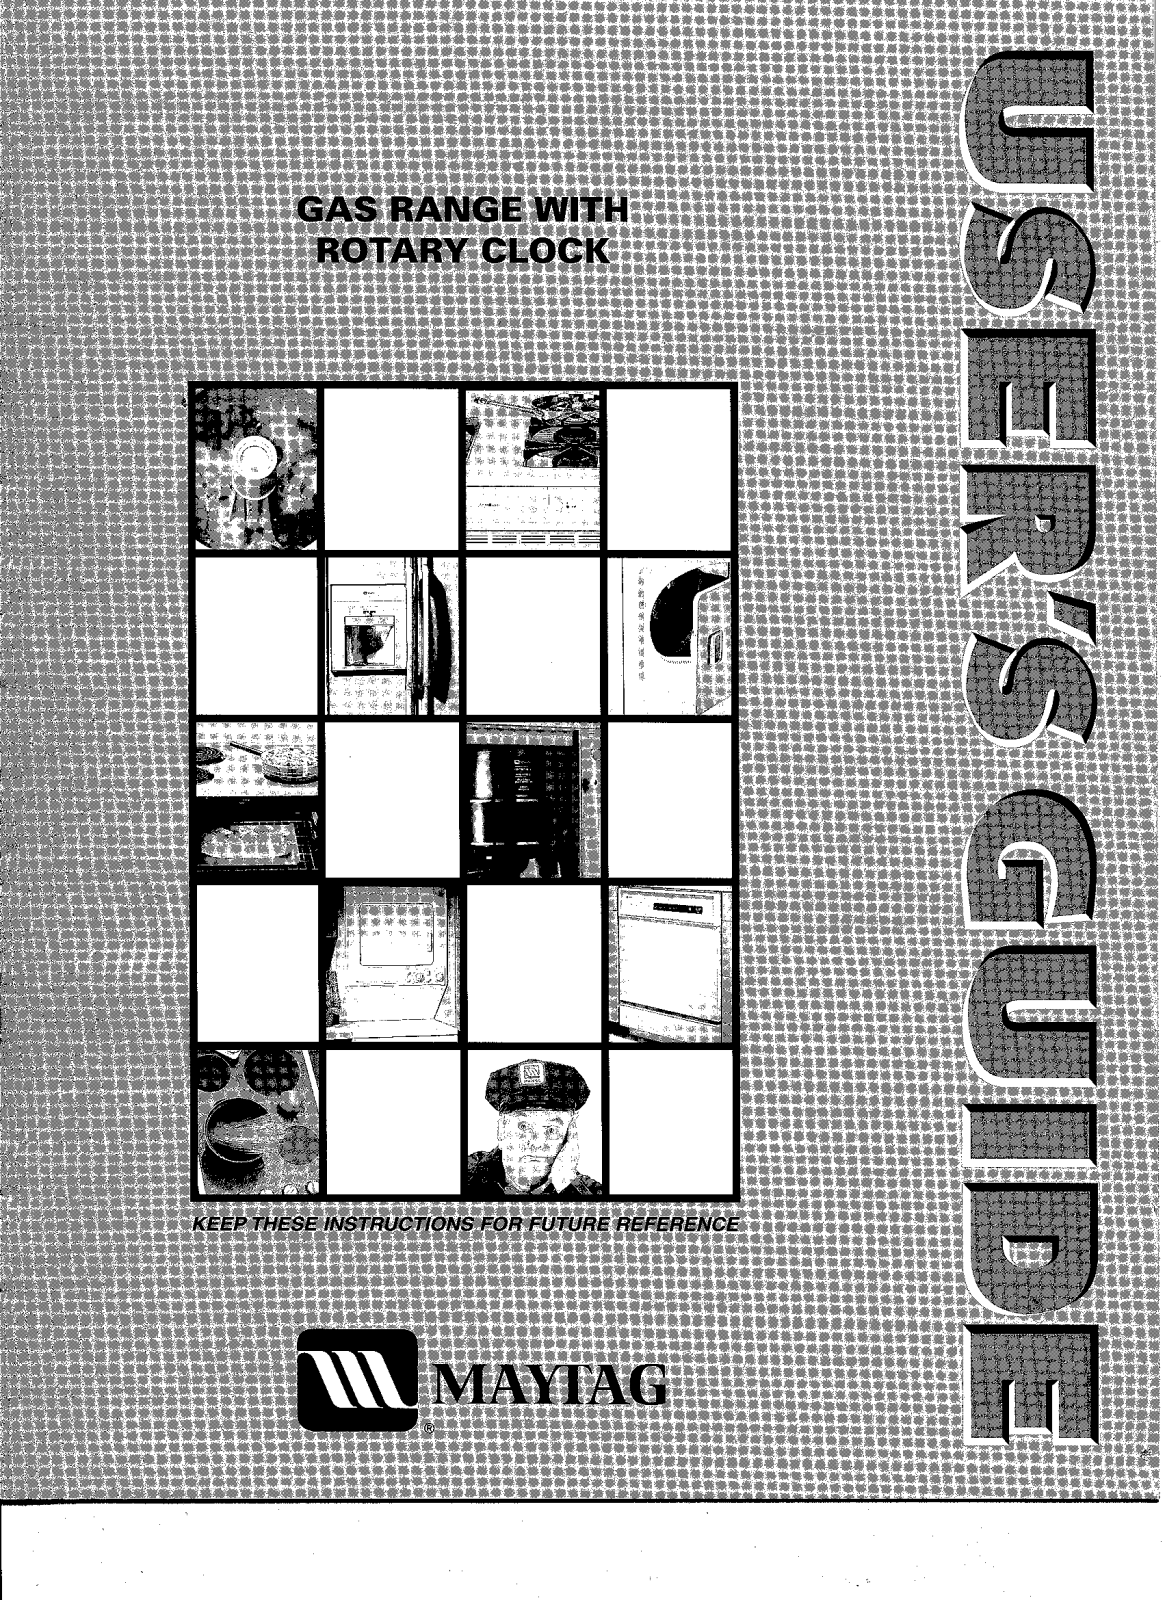 Maytag OL-1246-01 User Manual